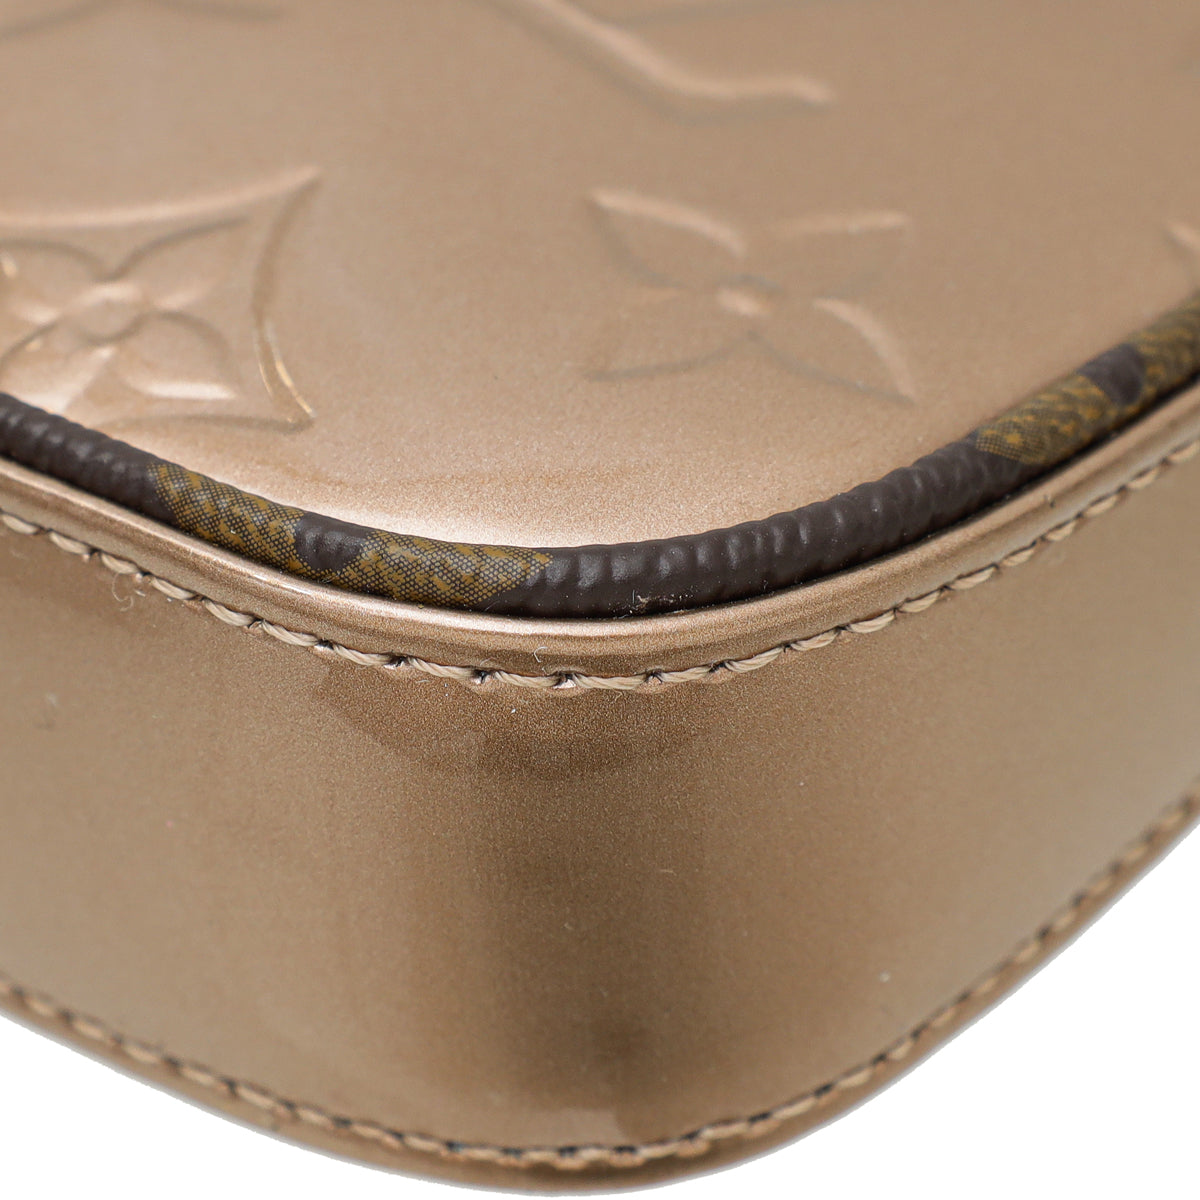 LOUIS VUITTON Metallic Vernis Leather Mini Pochette Accessoires Rose Gold